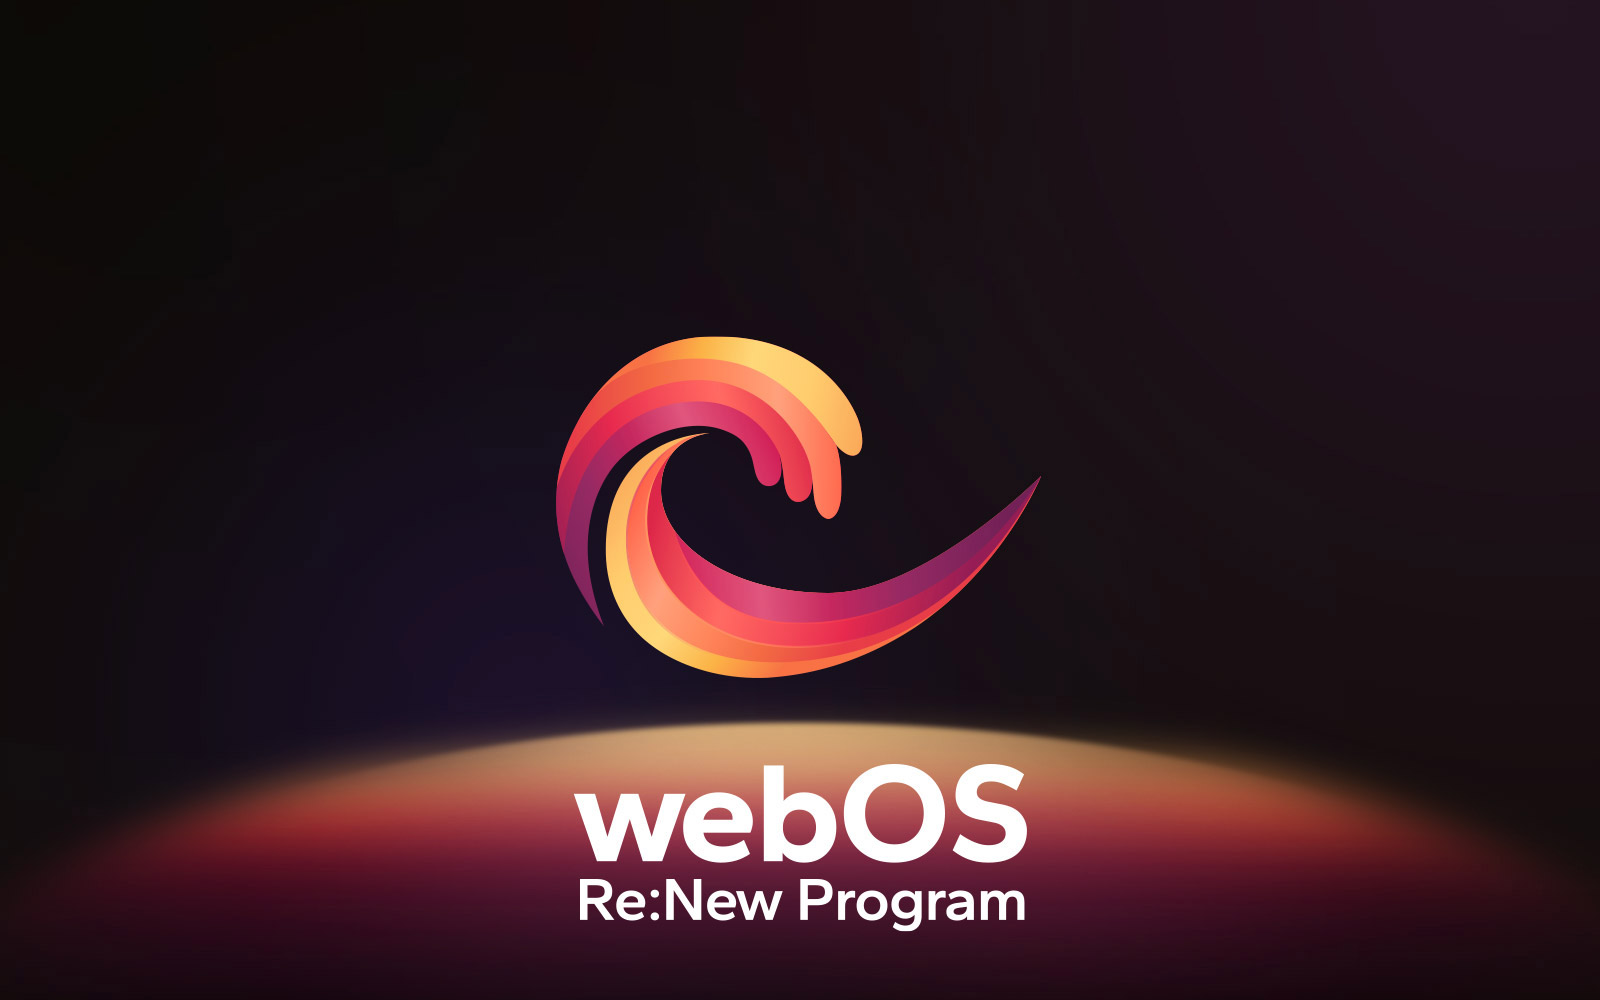 הלוגו של webOS מרחף במרכז על רקע שחור, והחלל למטה מואר בצבעי אדום, כתום וצהוב של הלוגו. המילים 'webOS Re:New Program' מופיעות מתחת ללוגו.